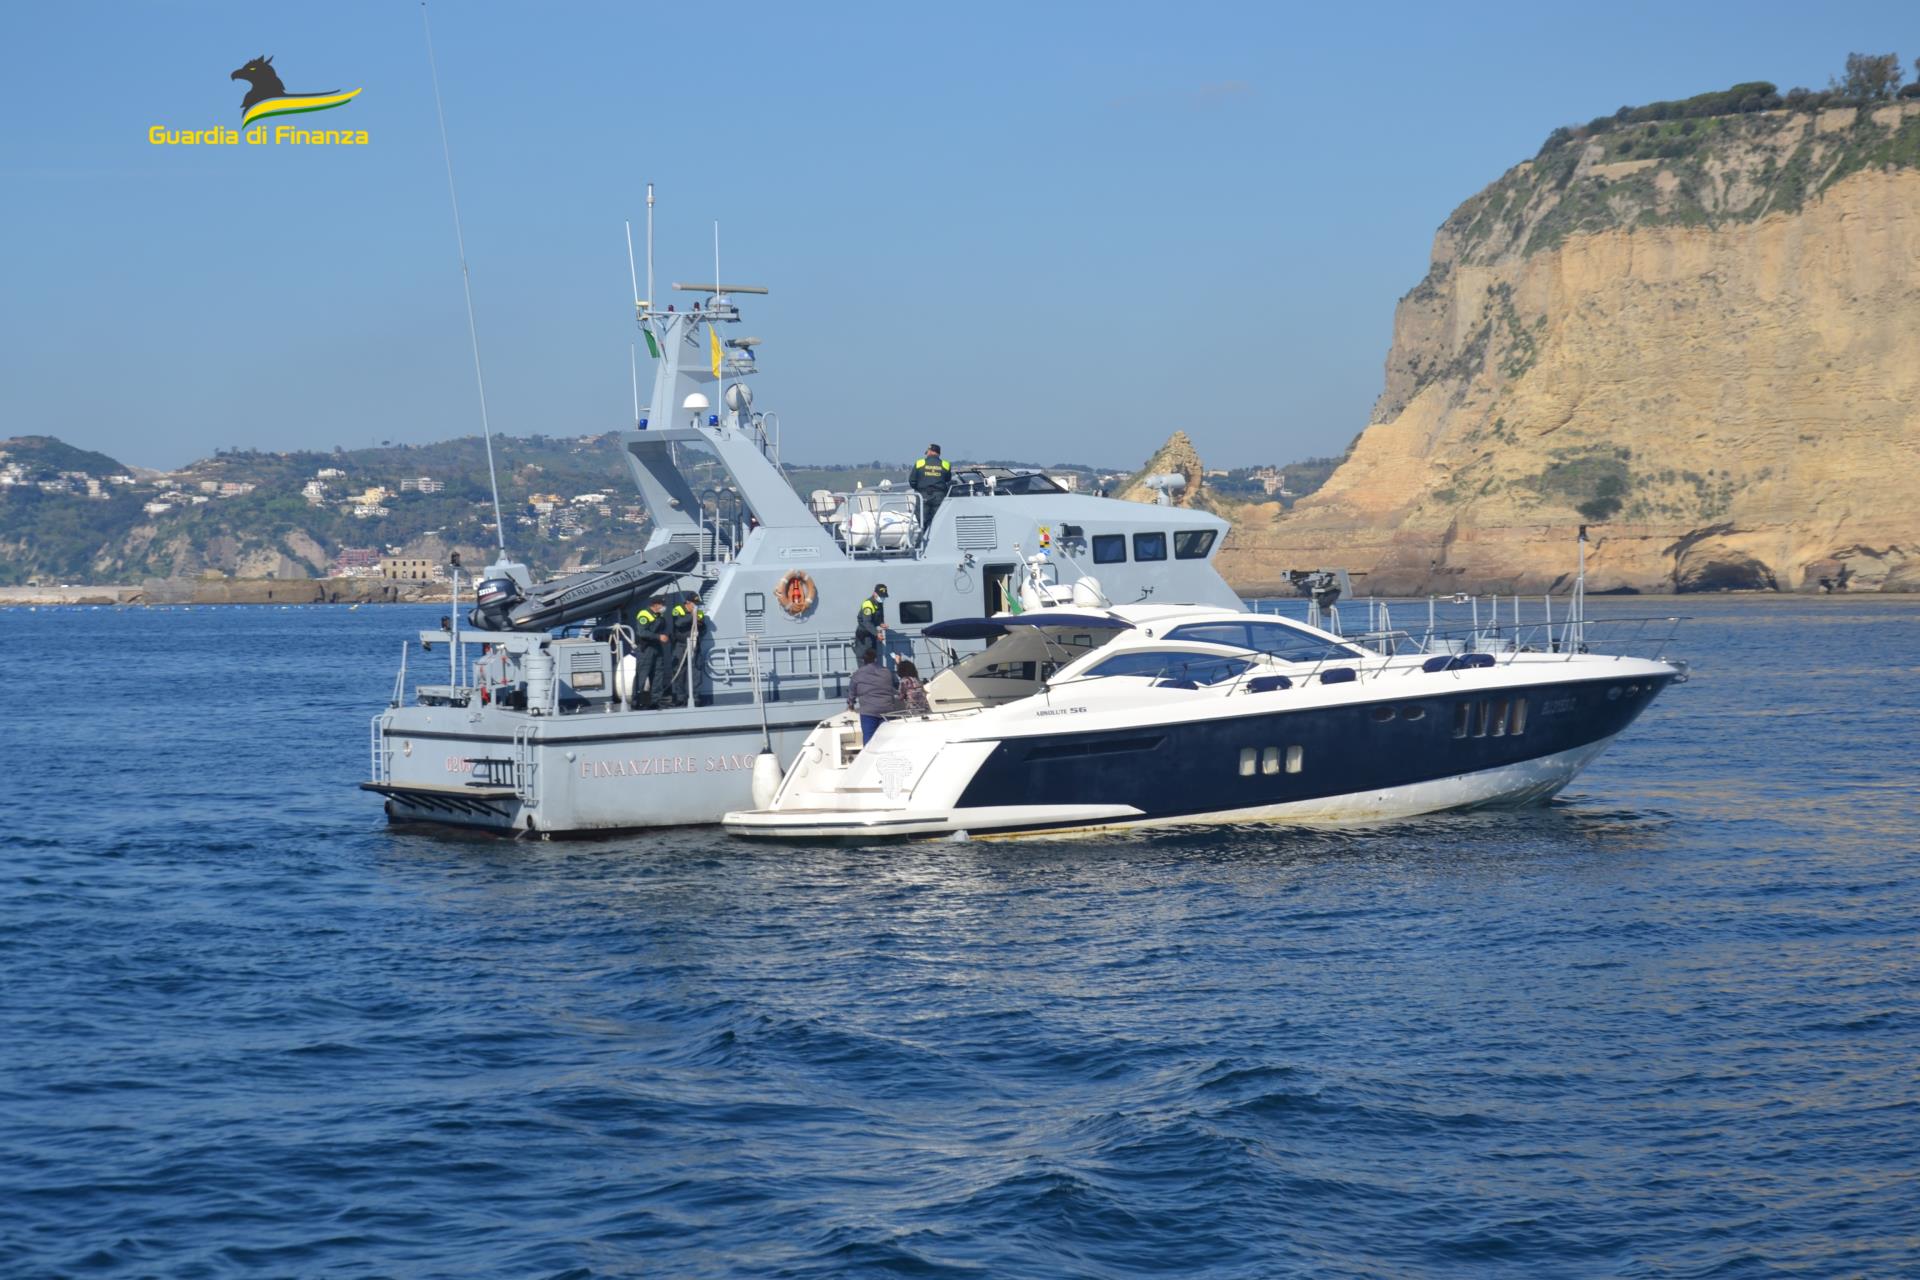 Golfo di Policastro, blitz Finanza noleggio barche turisti: multe per 400 mila euro. In 123 nei guai